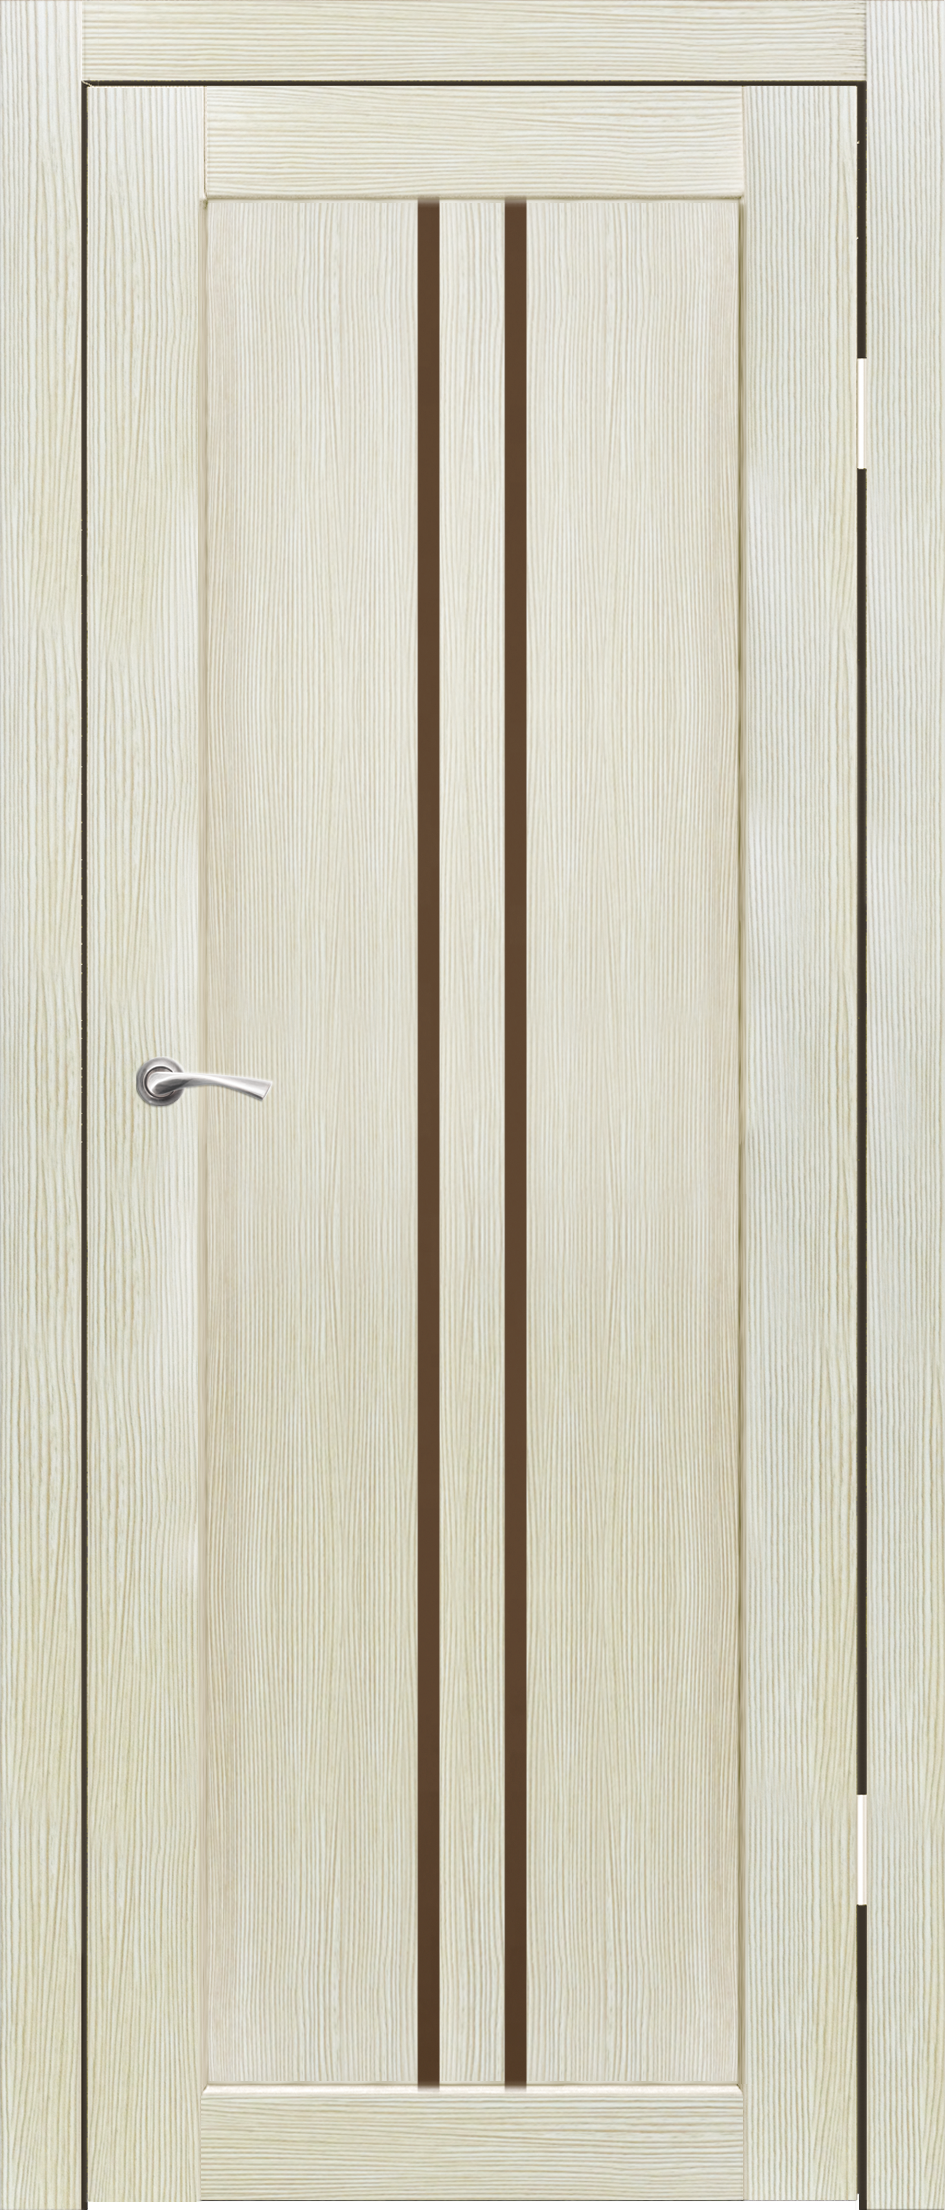 Полотно дверное остекленное Эко-шпон Токио 900*2000 Шагрень Капучино, стекло бронза сатин